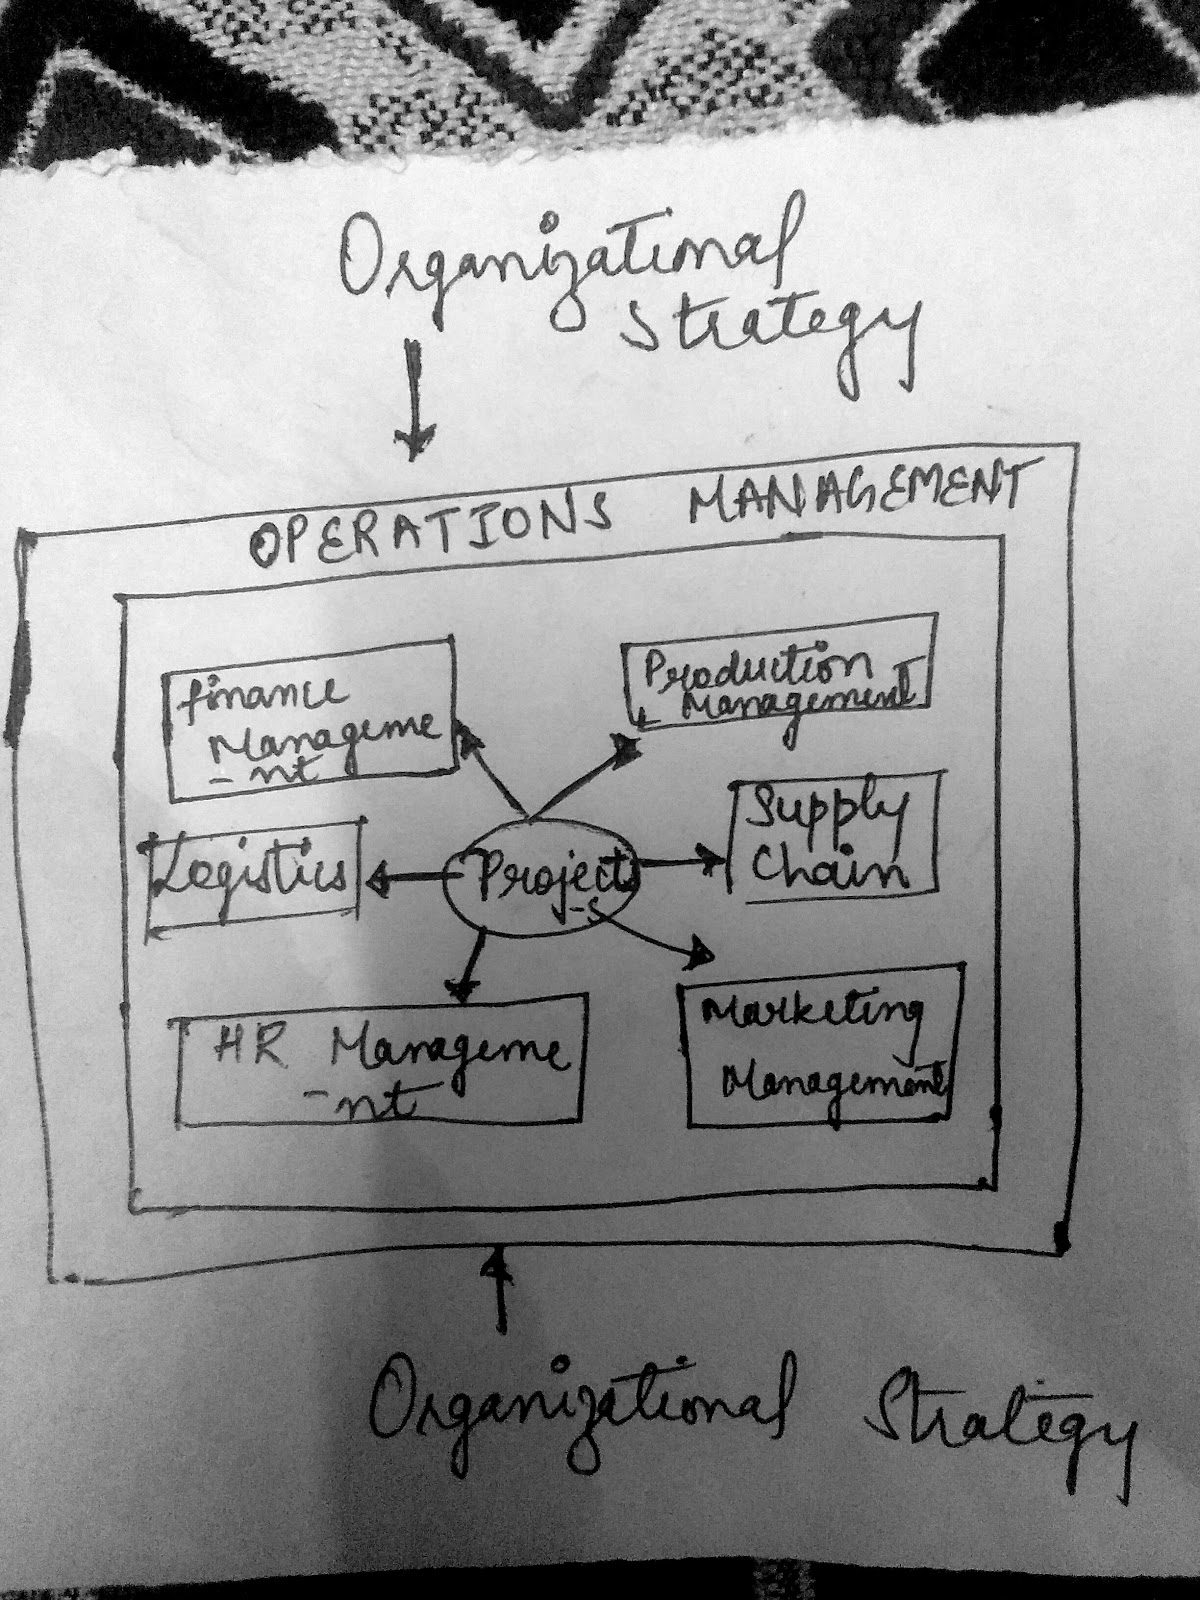 Onguinaldovy Pyyheanagemid MANAGEMENT finance Supply OPERATIONS Manageme Logistics & Project chain HR Manageme Marketing Mana